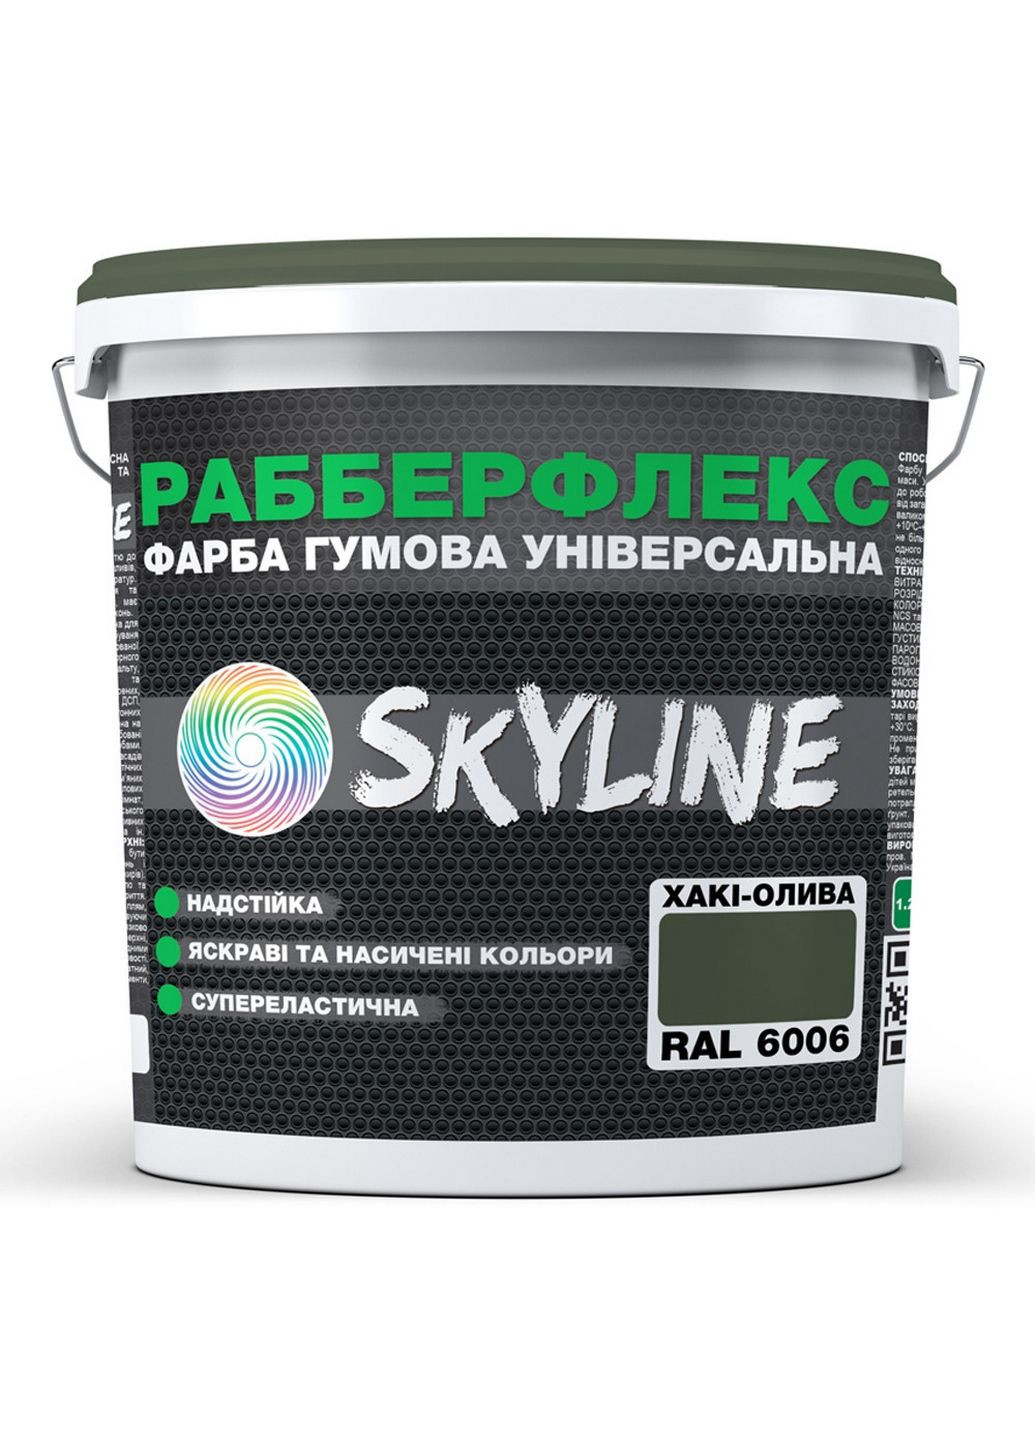 Краска резиновая суперэластичная сверхстойкая «РабберФлекс» 3,6 кг SkyLine (289368622)